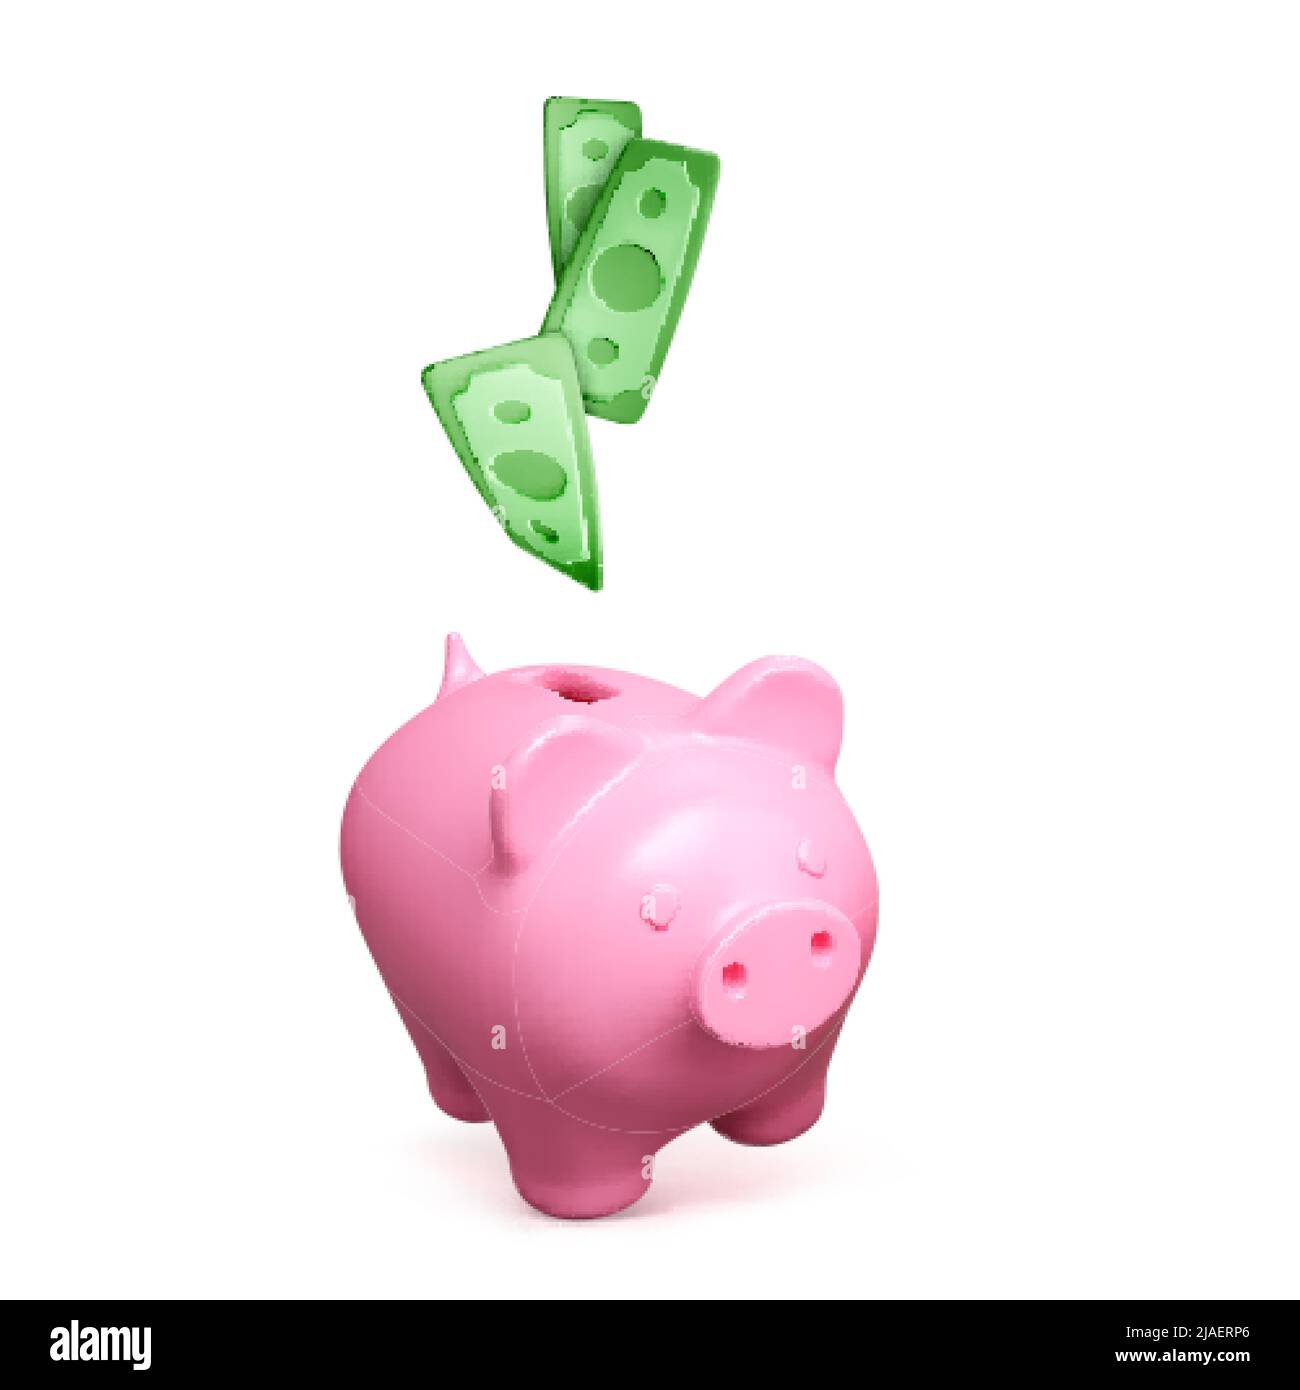 Rosa Sparschwein und fallendes grünes Papiergeld. Finanzgeschäft und Investitionen isoliert auf weißem Hintergrund. Bewahren Sie das Geld an einem sicheren Ort auf. Vektorgrafik Stock Vektor